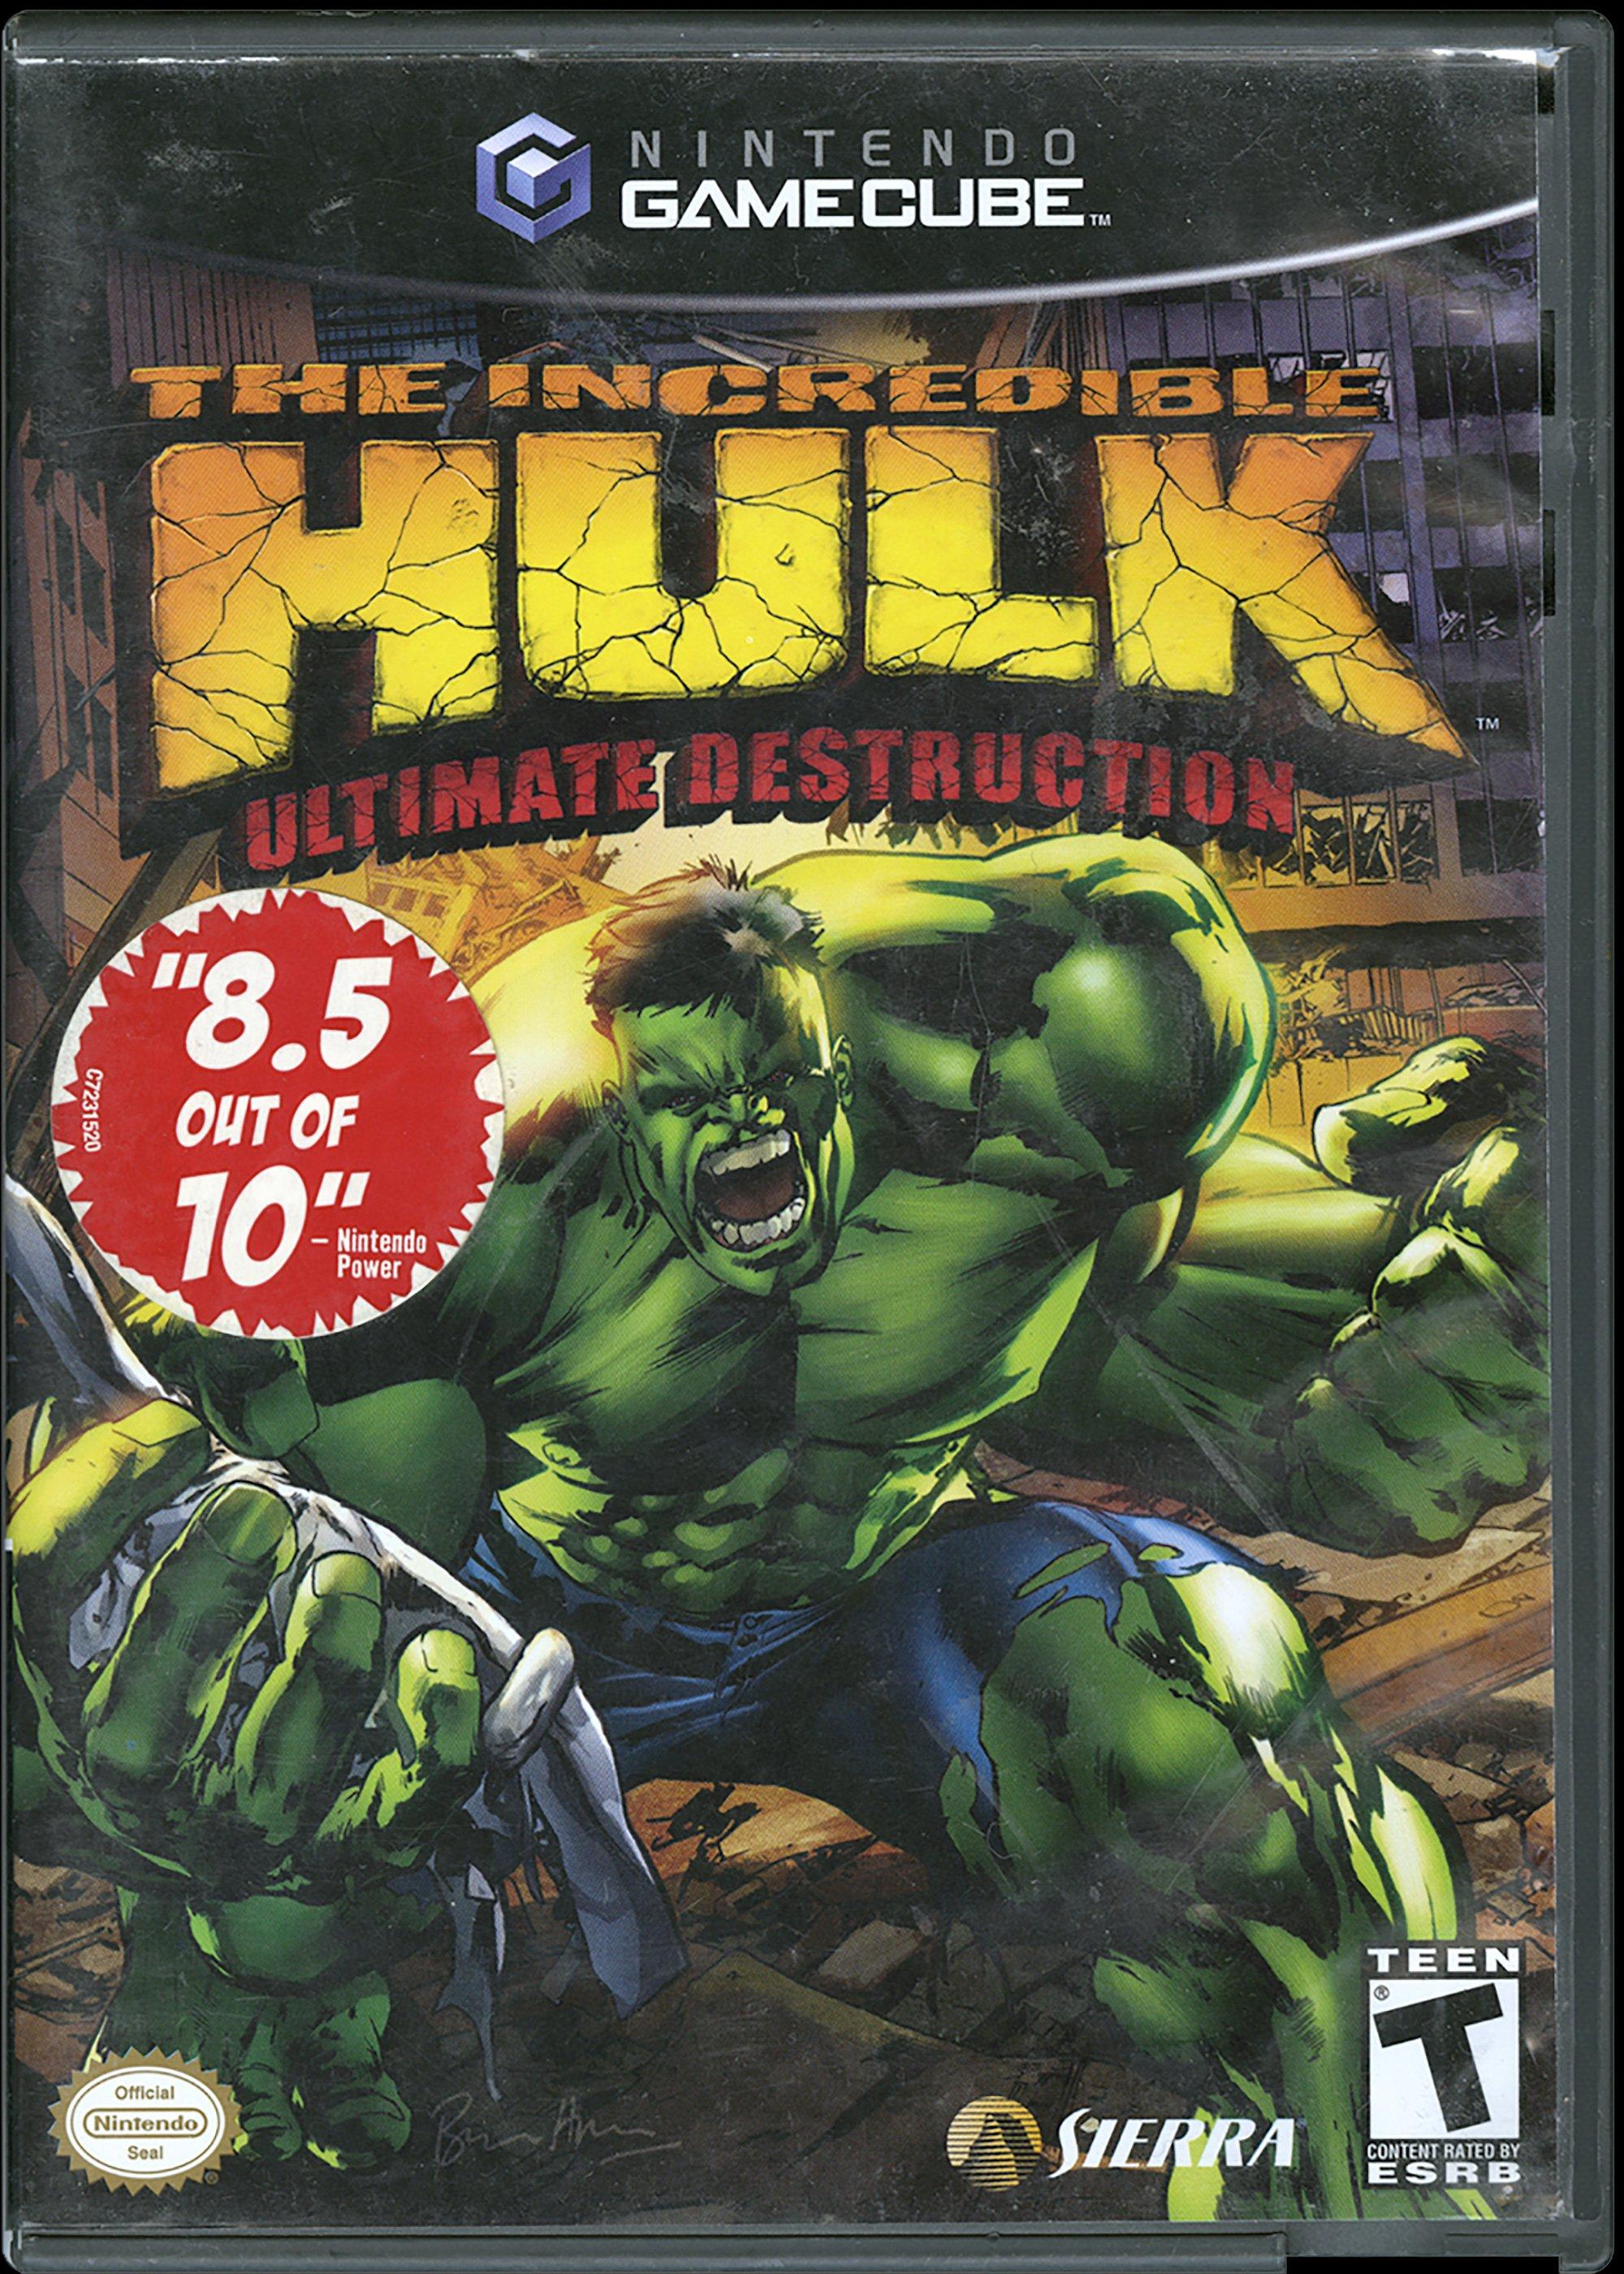 the incredible hulk xbox 360